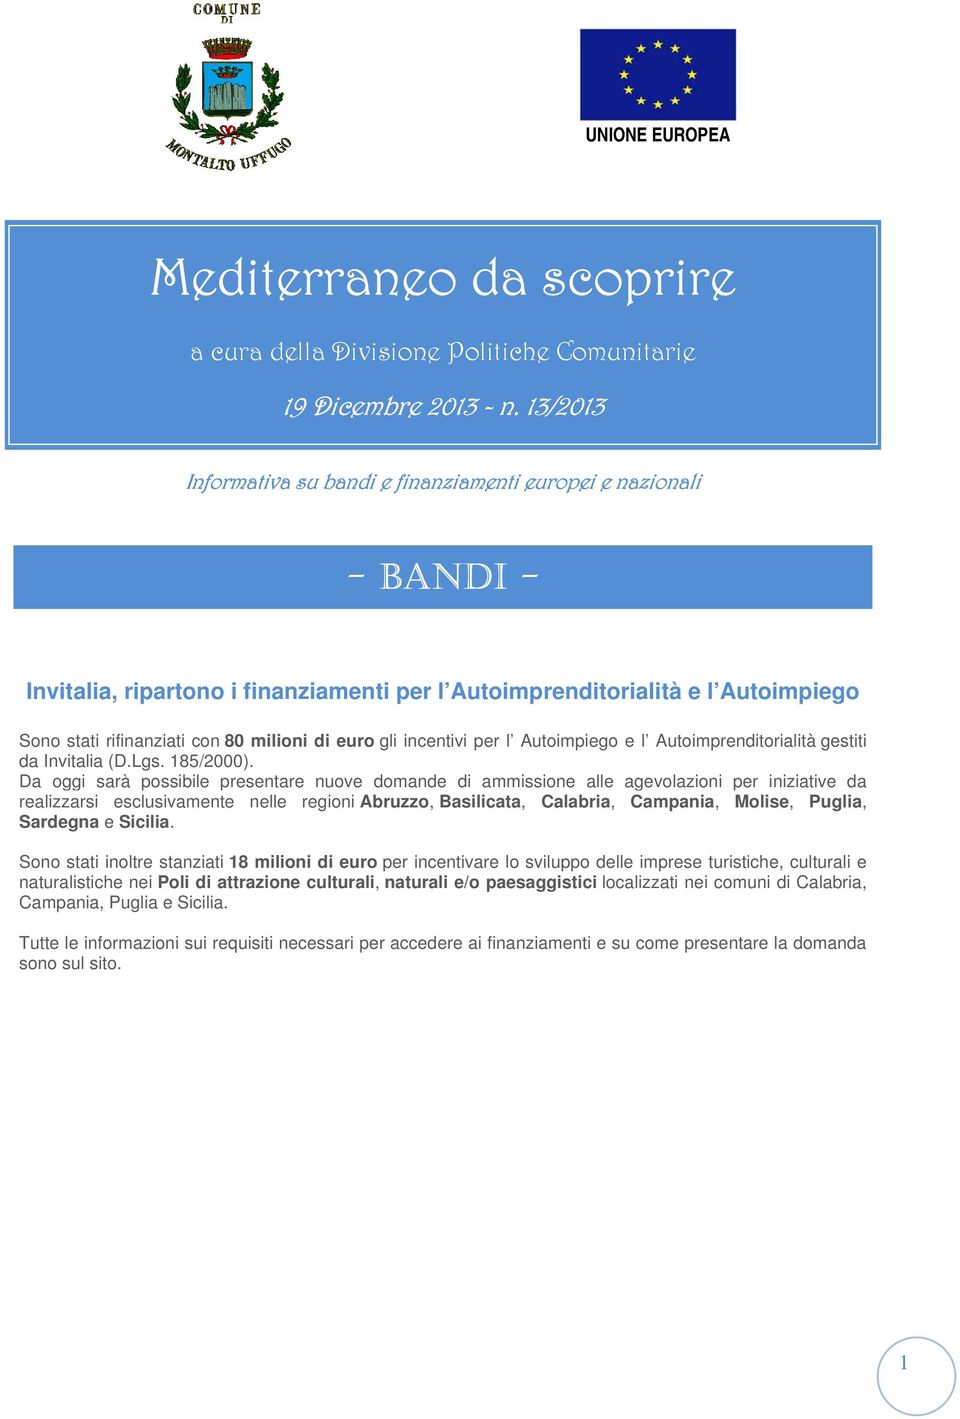 euro gli incentivi per l Autoimpiego e l Autoimprenditorialità gestiti da Invitalia (D.Lgs. 185/2000).